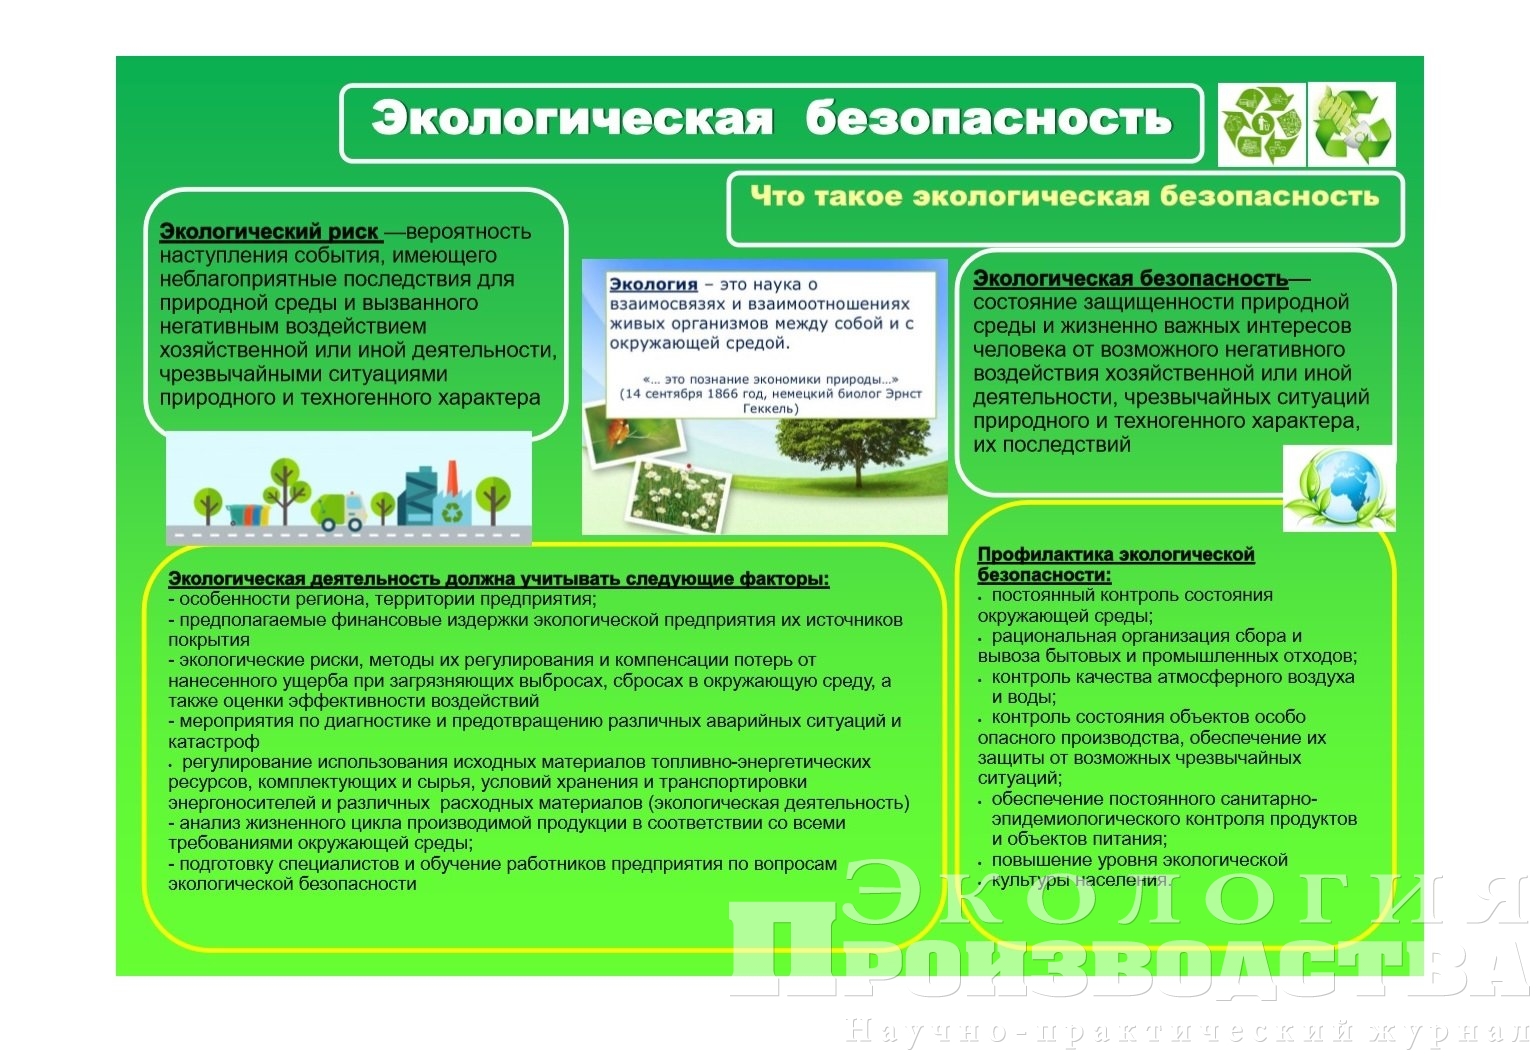 Доклад: Экологическая деятельность промышленных предприятий